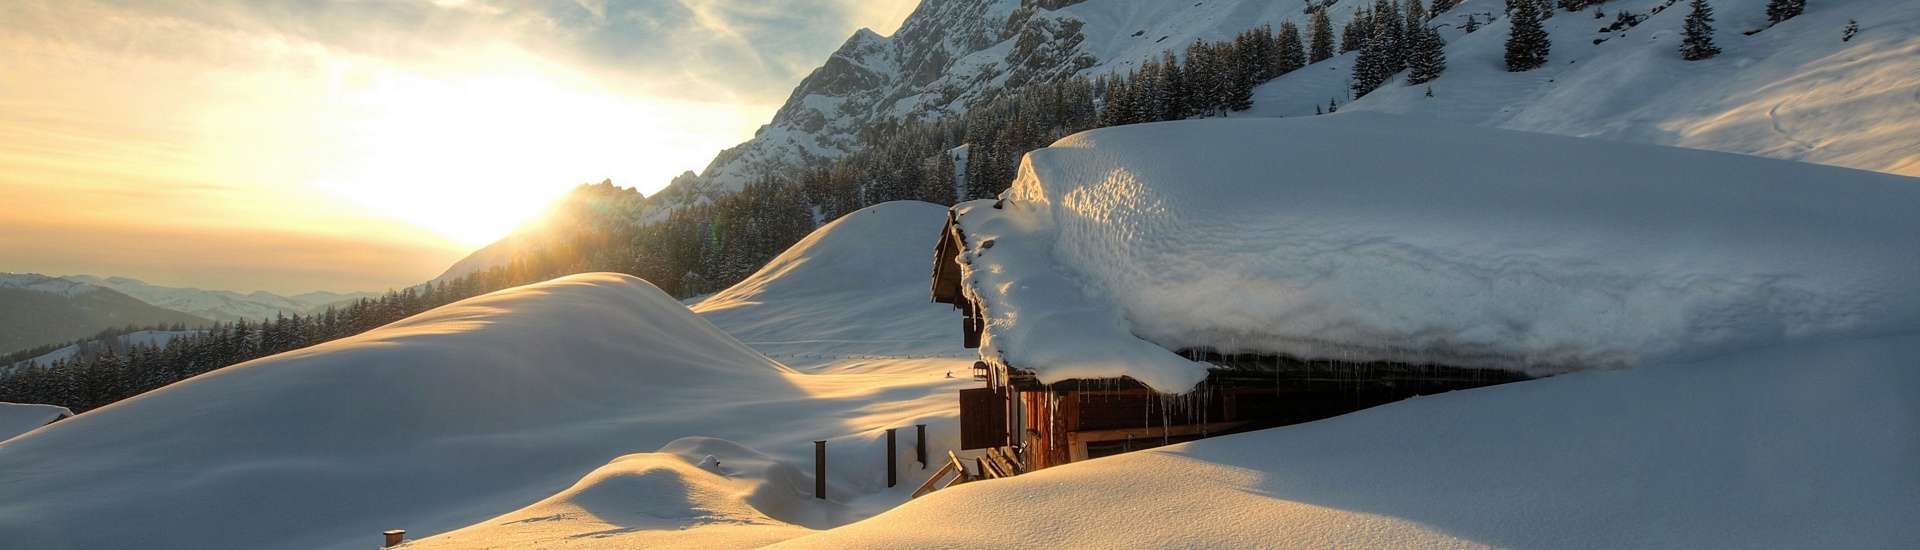 Wyjazd na narty w Austrii do Niederau